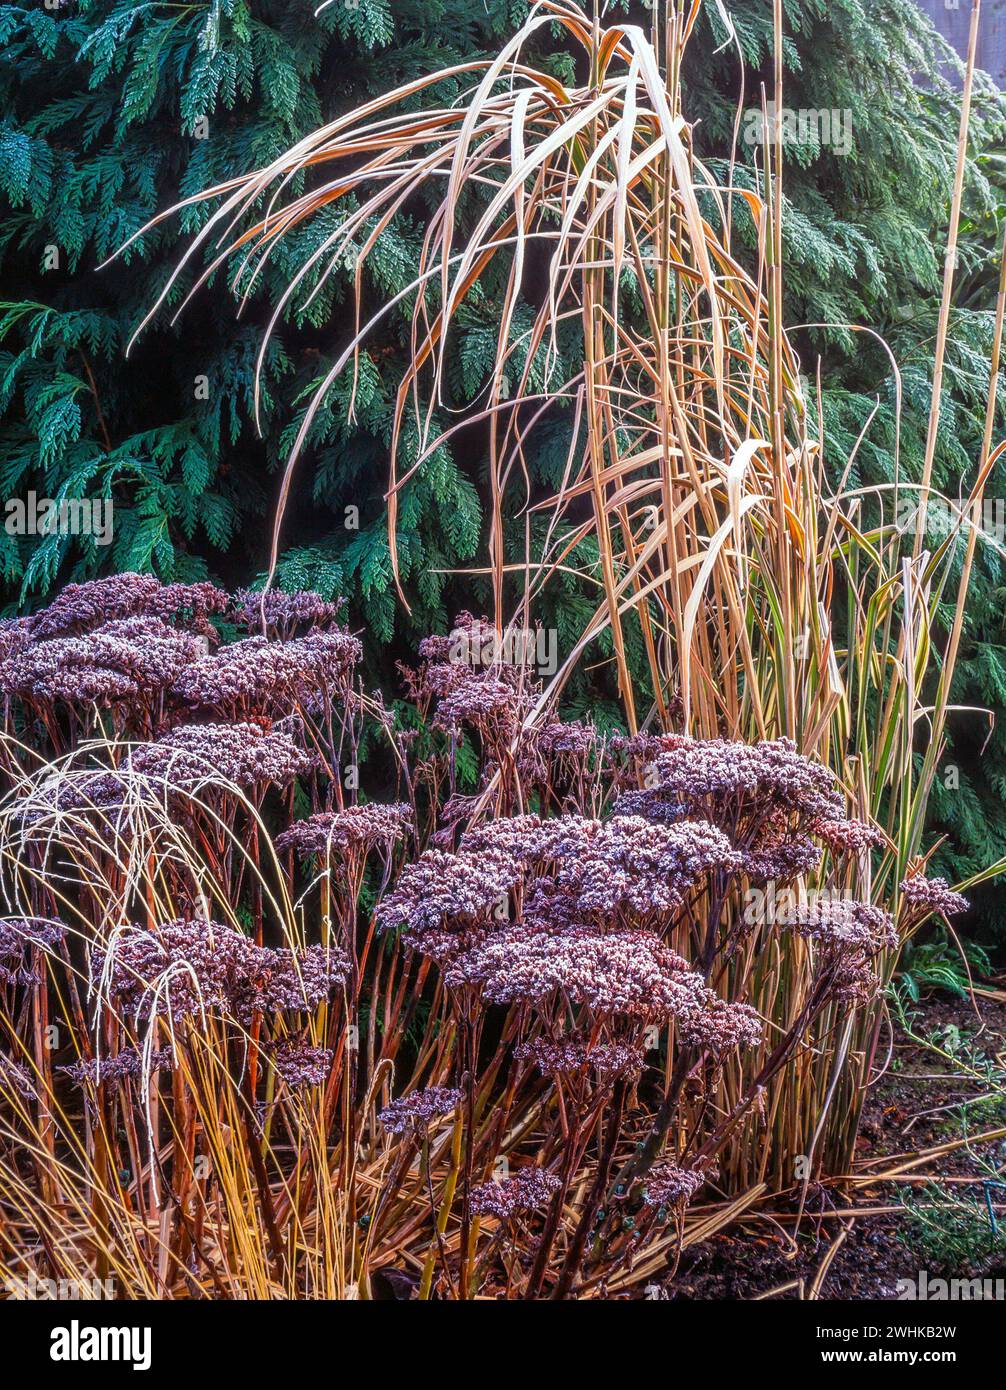 Feuillage de jardin d'hiver de Sedum Spectabile 'Autumn Joy' et Miscanthus sinesis variegatus (herbe argentée japonaise) avec gel de houle, Angleterre, Royaume-Uni Banque D'Images